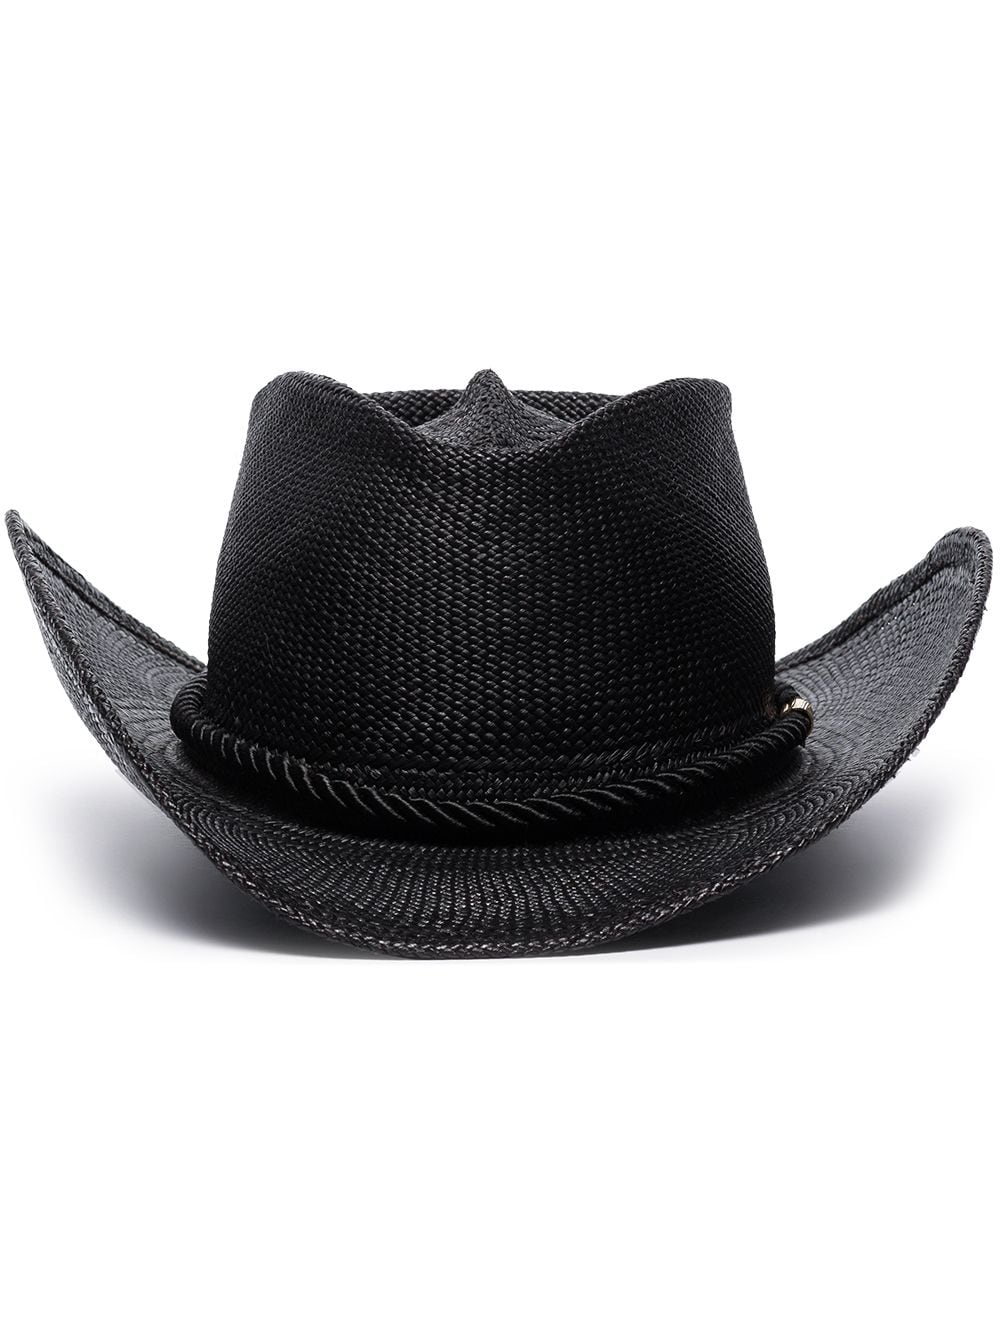 Gladys Tamez Millinery Black Zuma Straw Cowboy Panama Hat